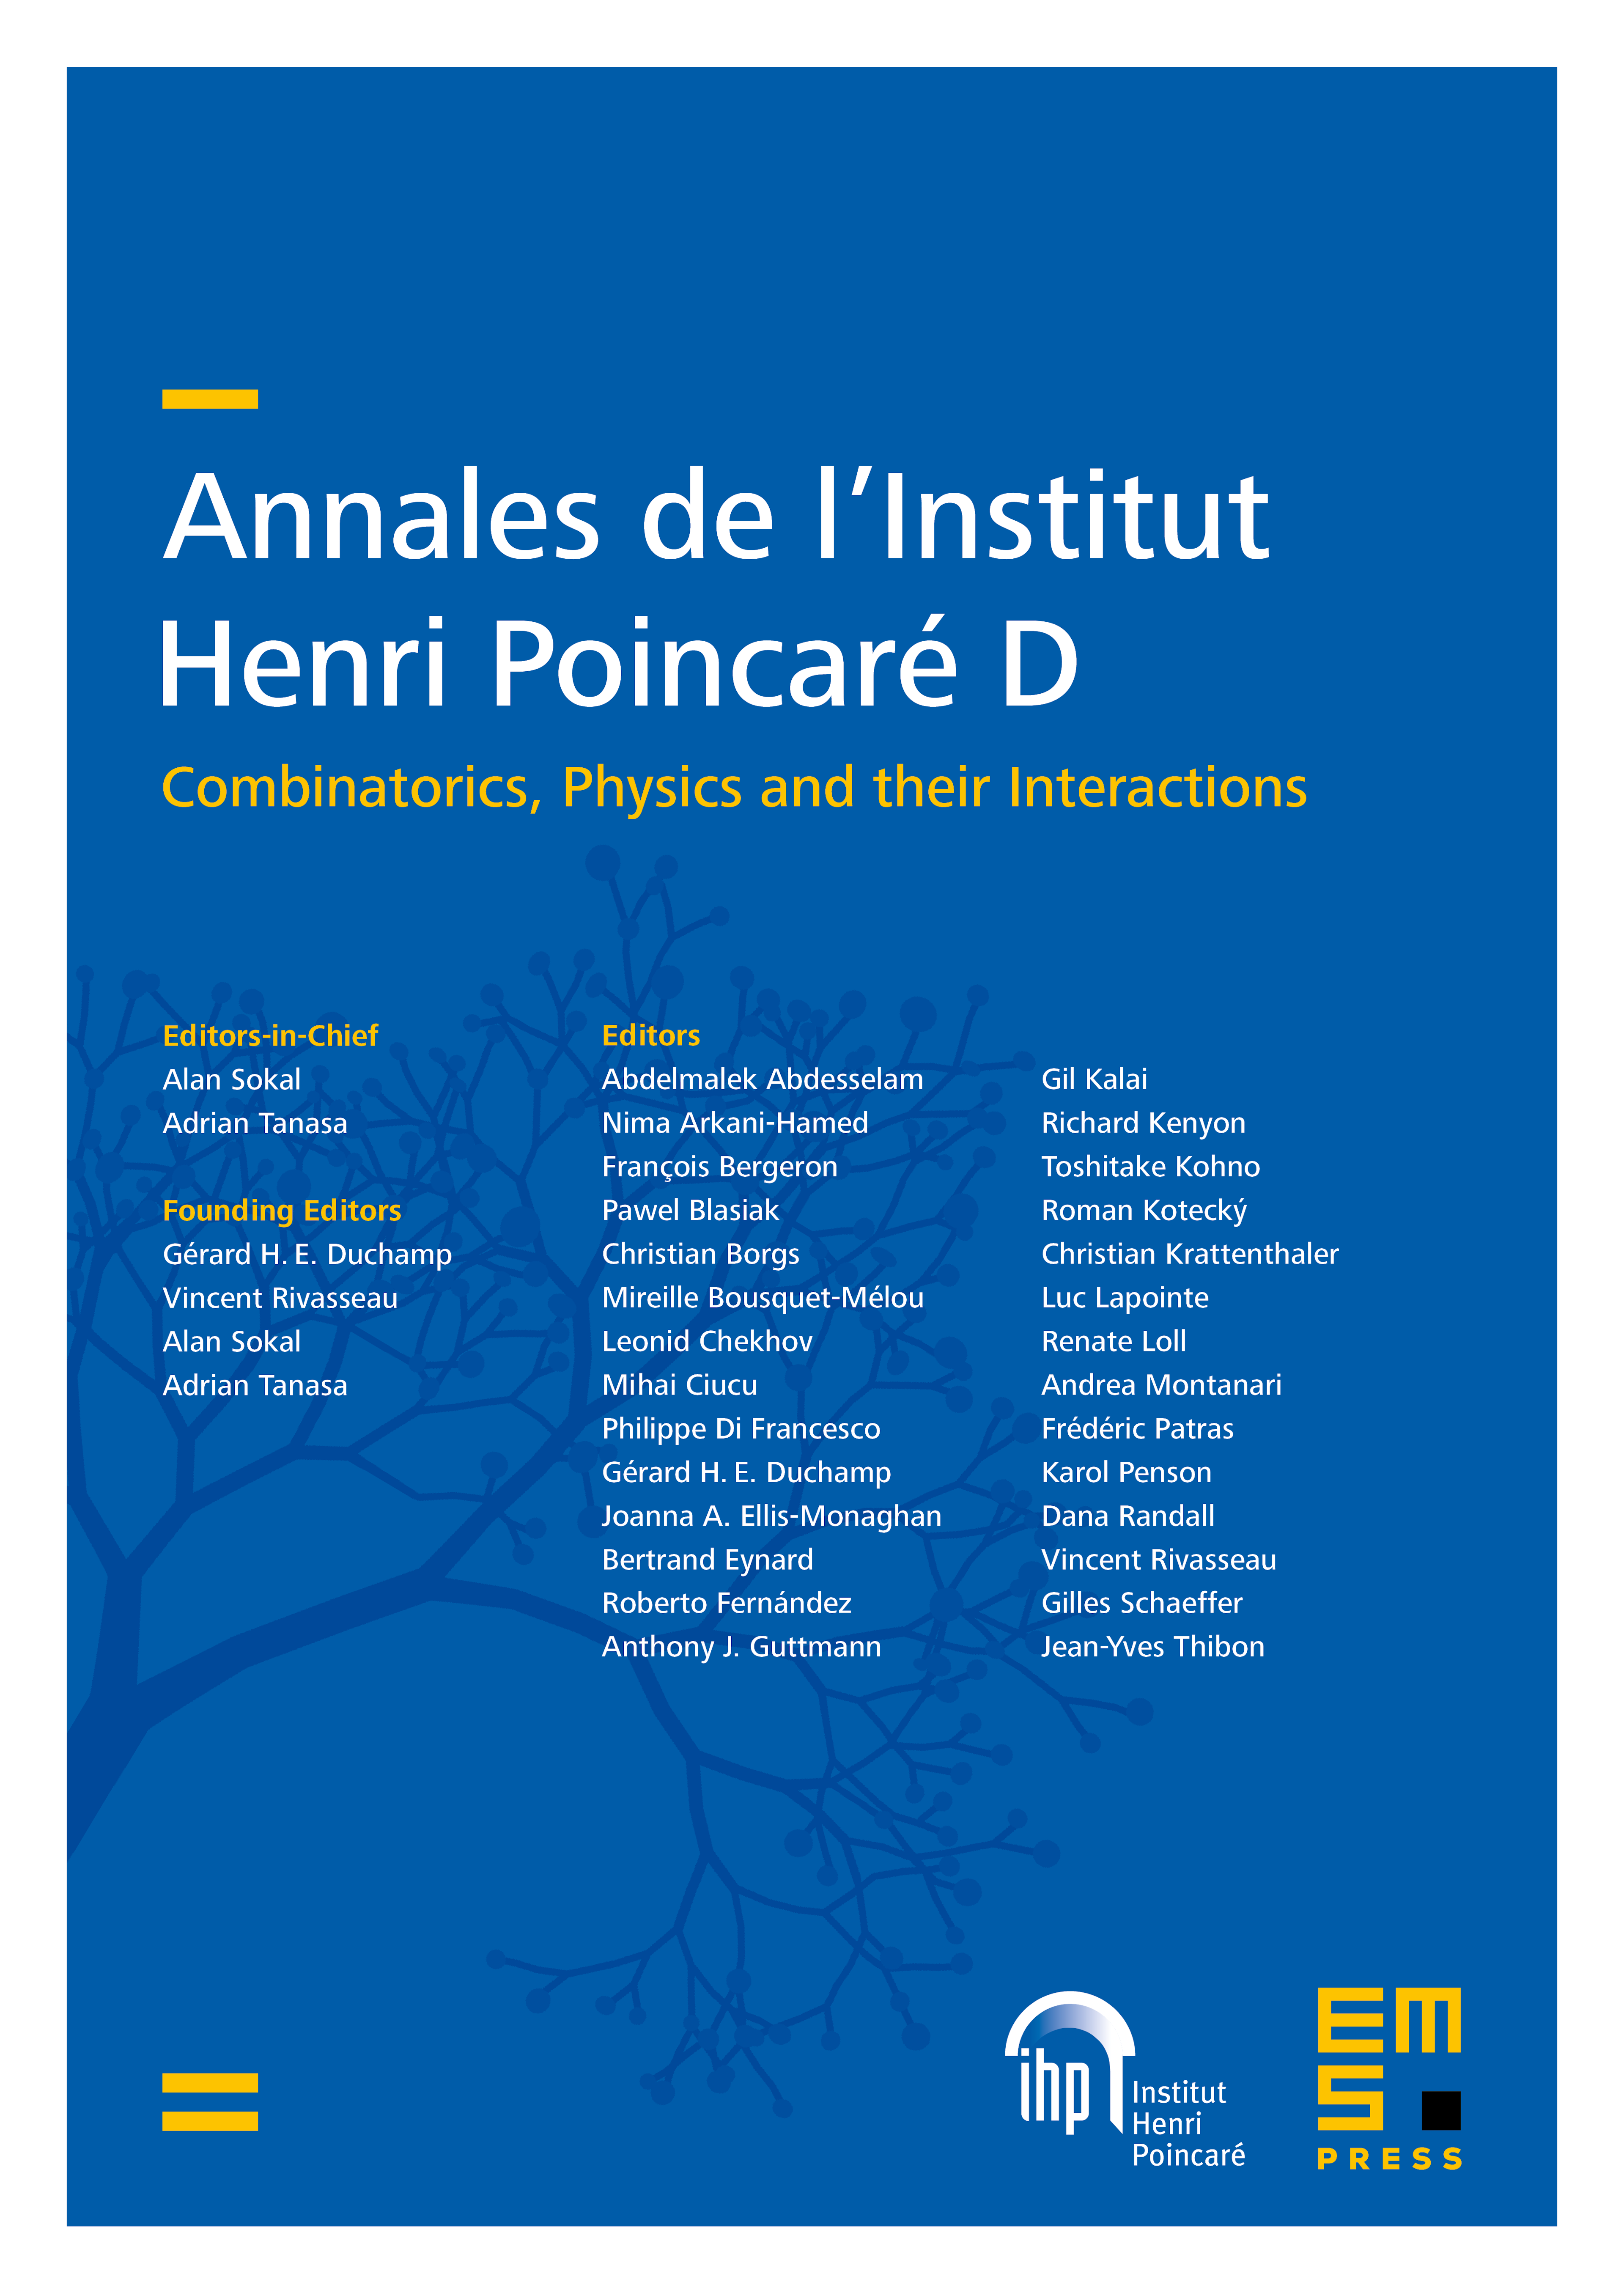 Annales de l’Institut Henri Poincaré D cover